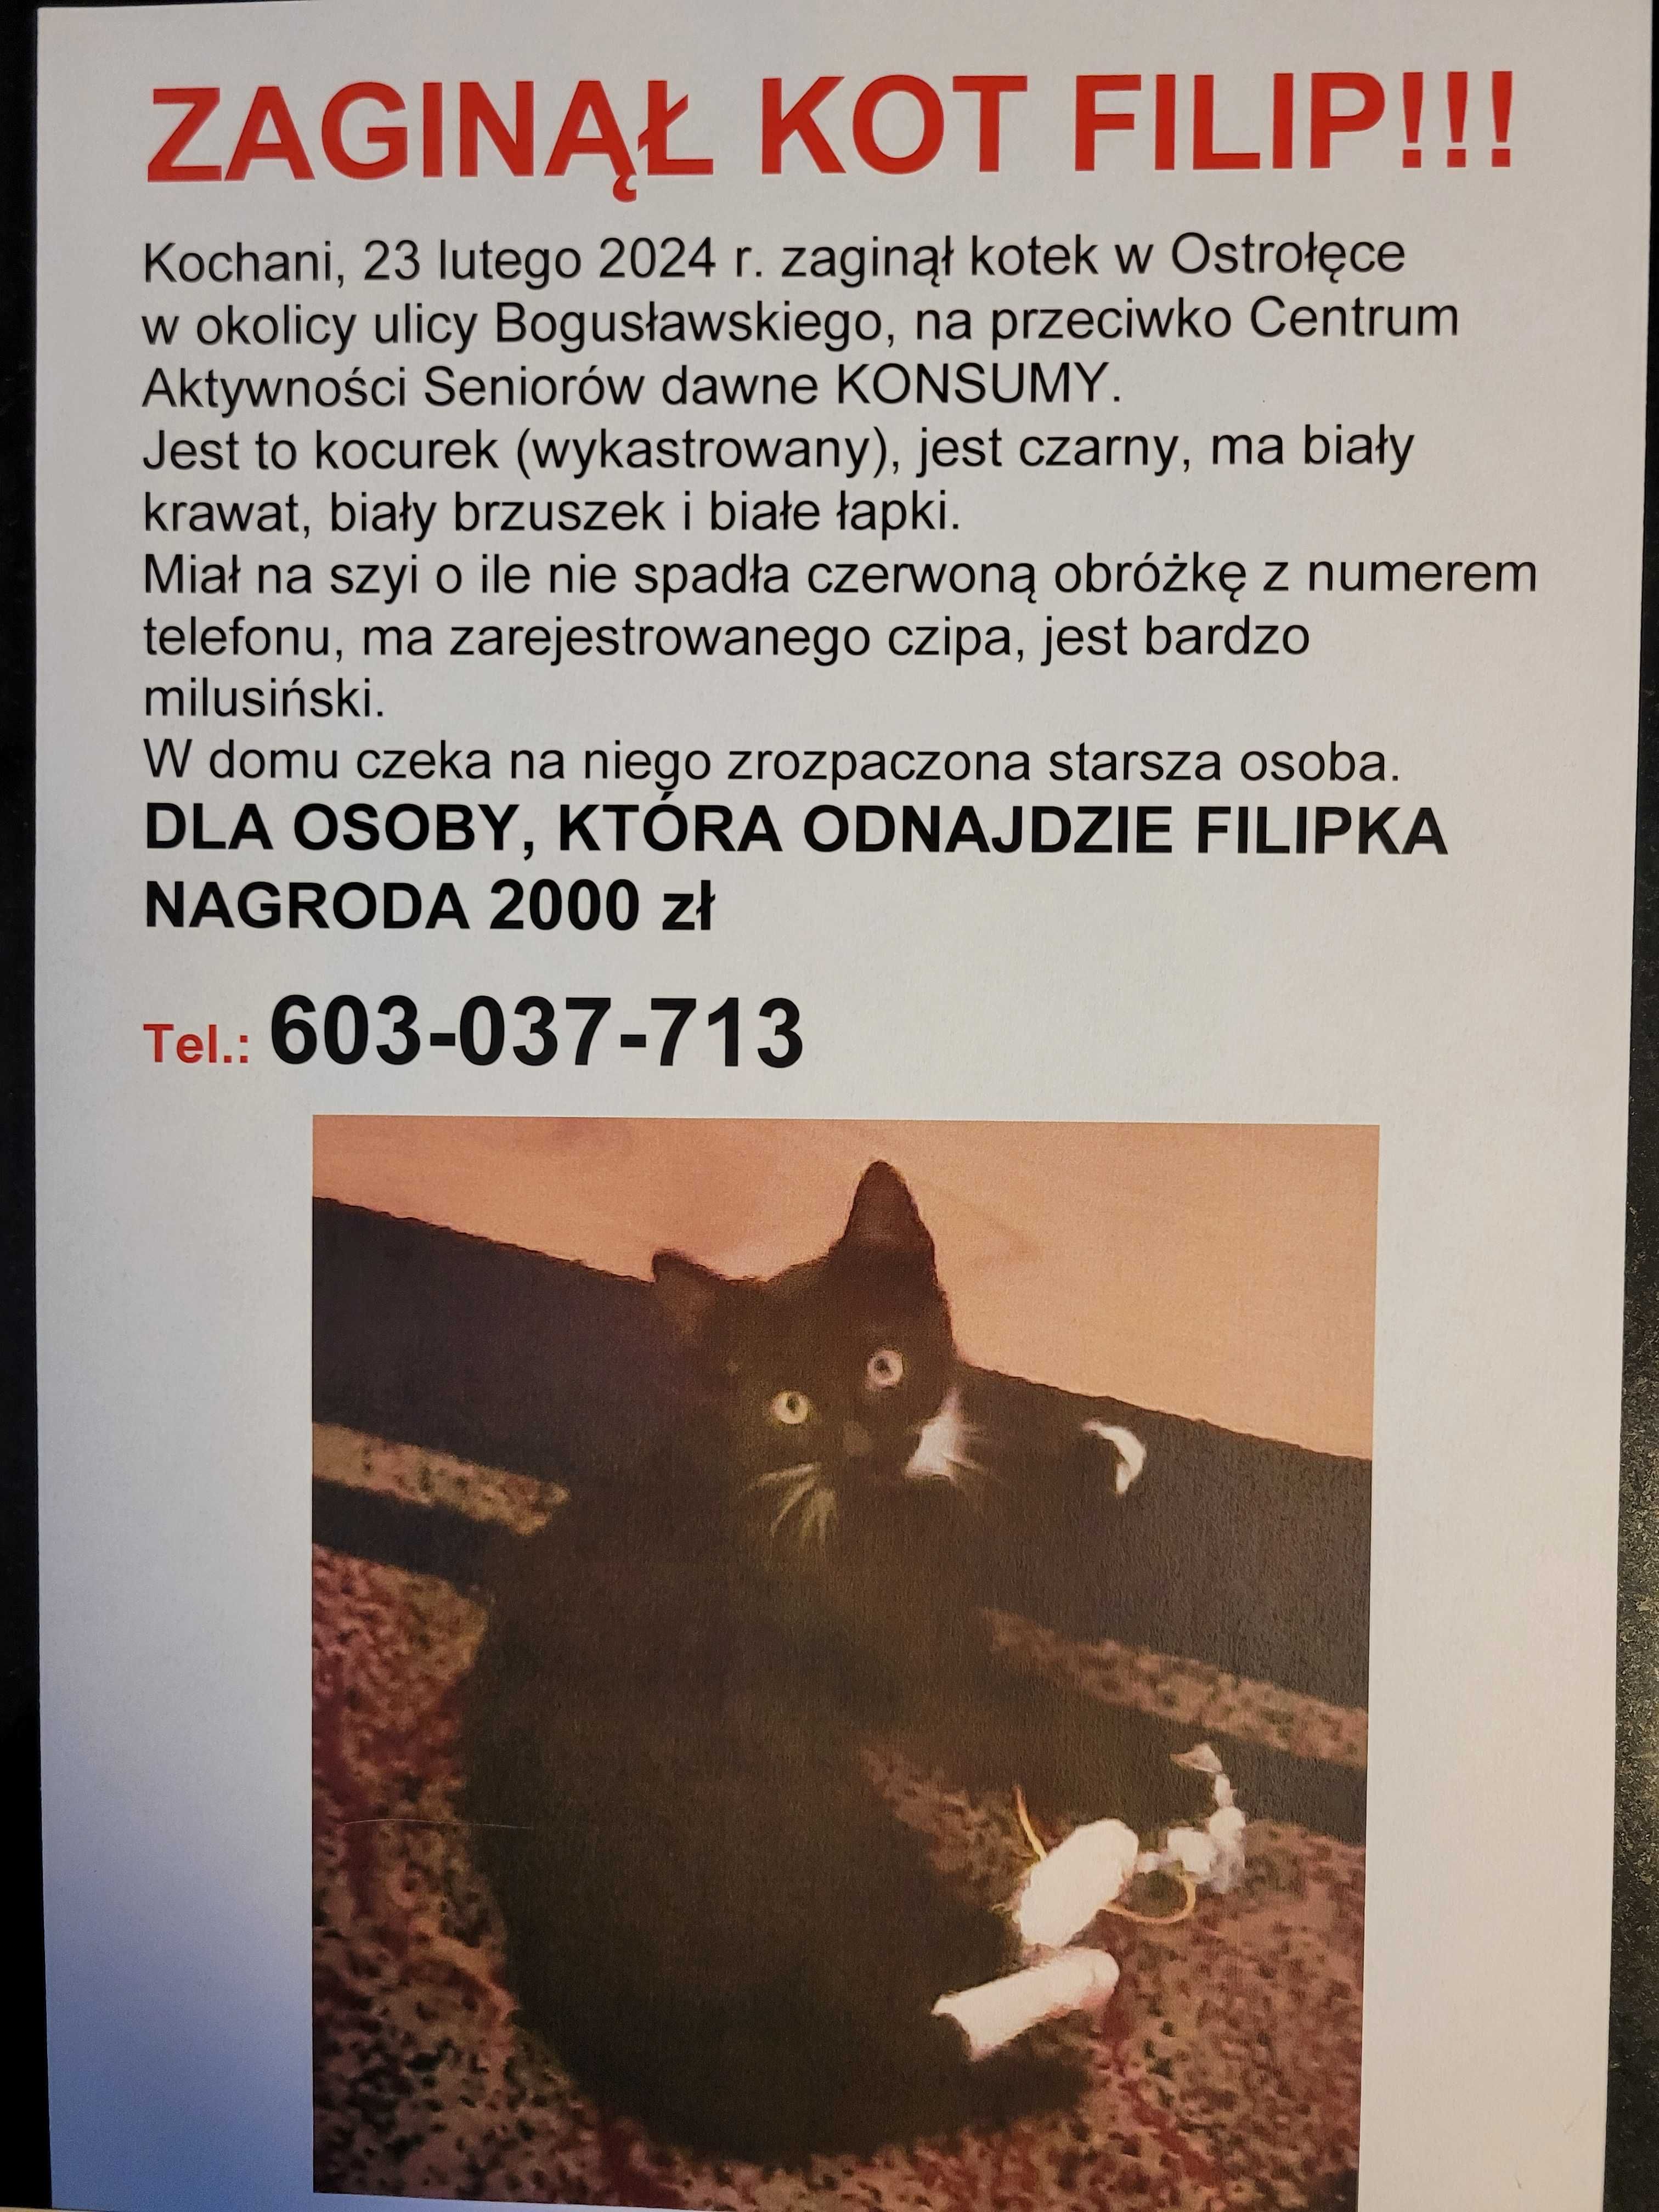 Zaginął kot Filip w Ostrołęce. Za odnaleziene Filipka nagroda 2000 zł.